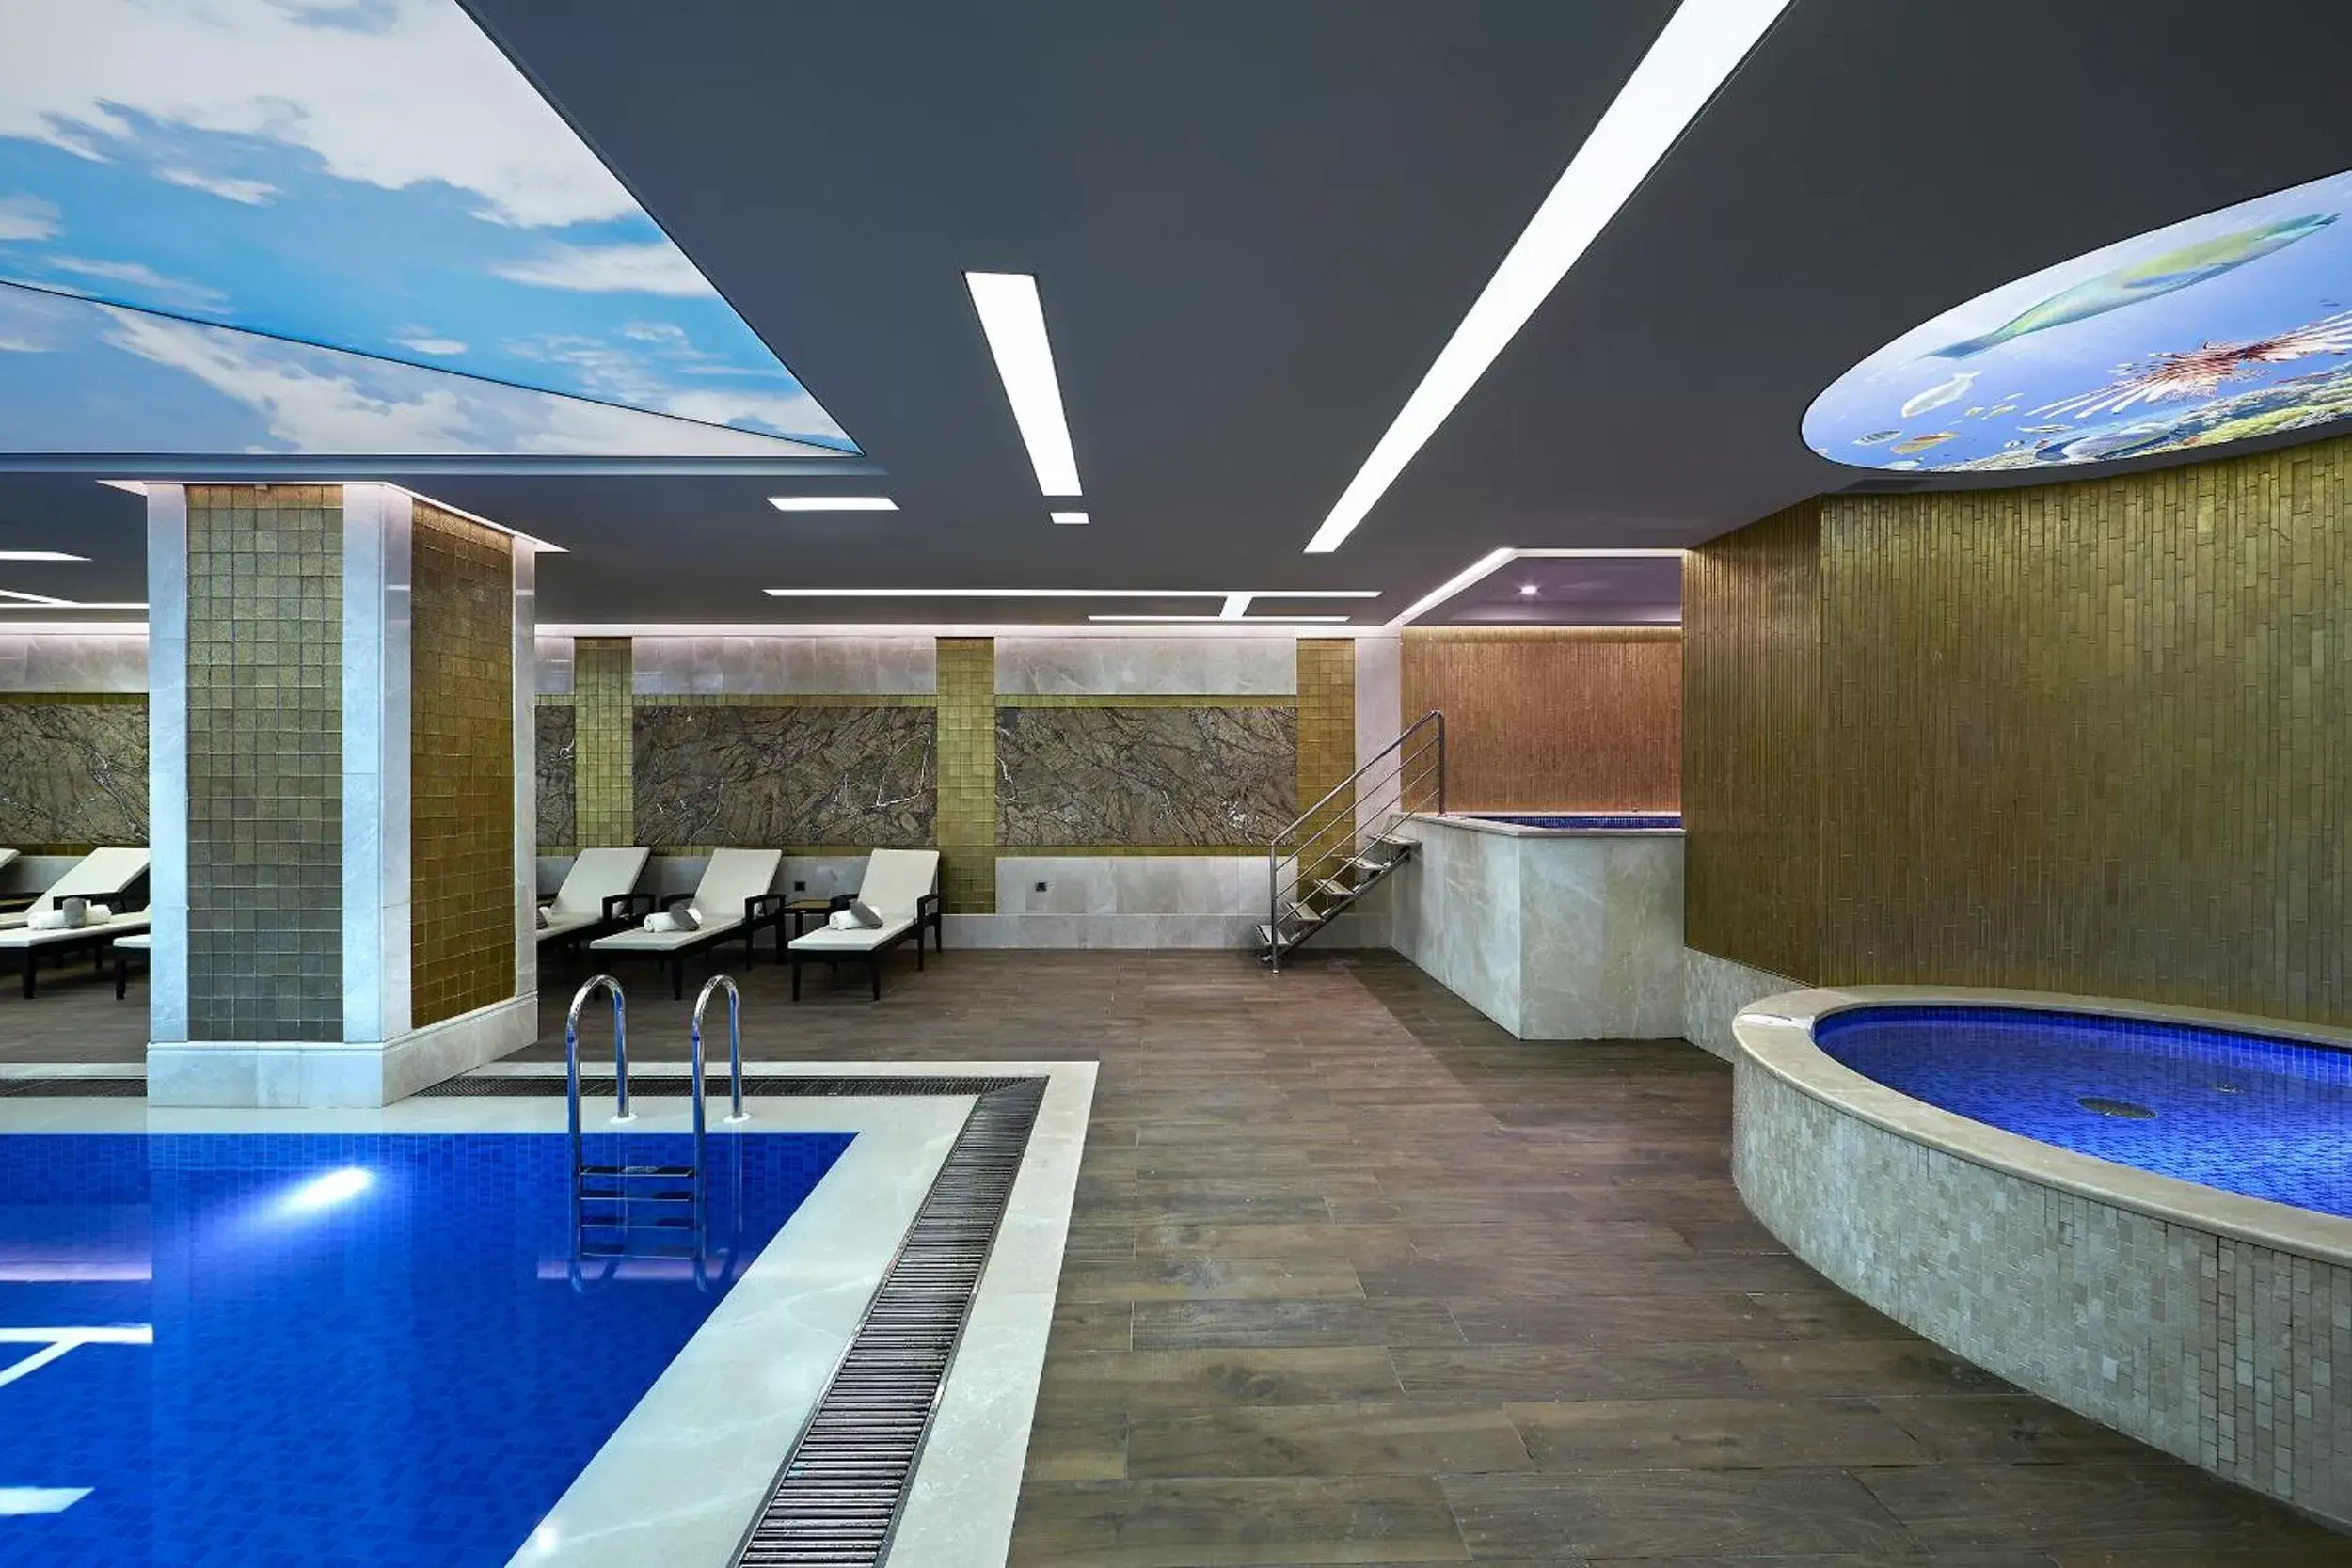 Hot Tub, Swimming Pool in Uranus Istanbul Topkapi